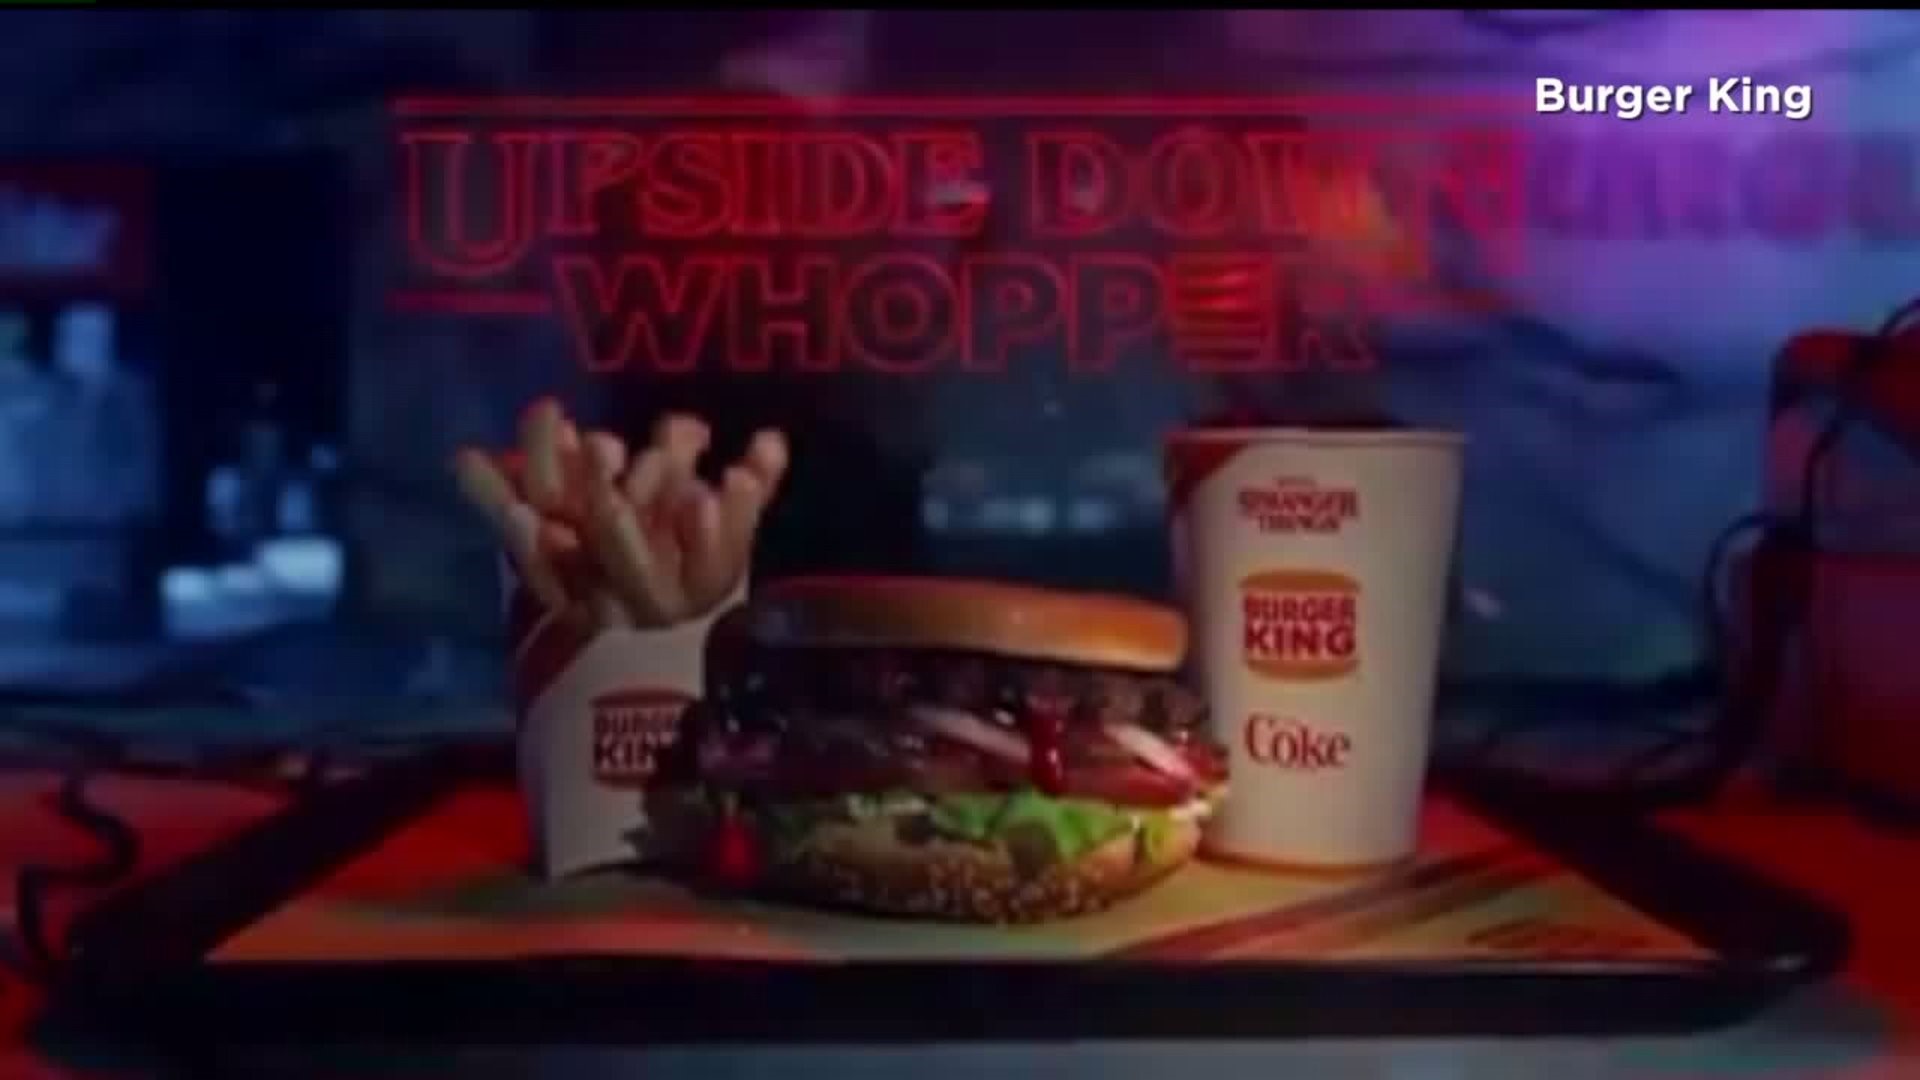 Burger King serving the `Upside Down Whopper` for Stranger Things